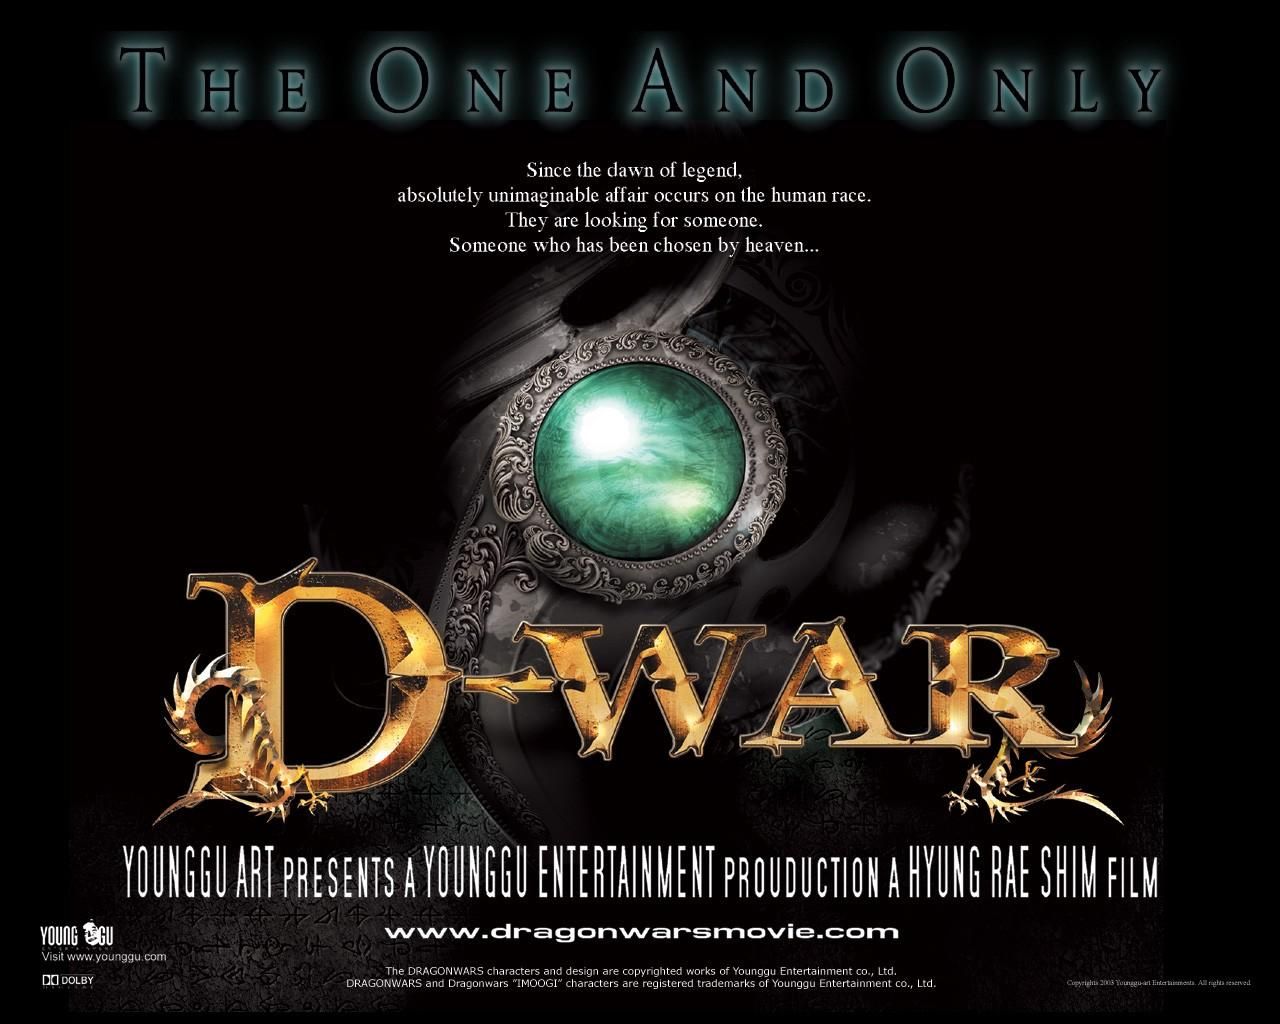 Фильм Война динозавров | D-War - лучшие обои для рабочего стола